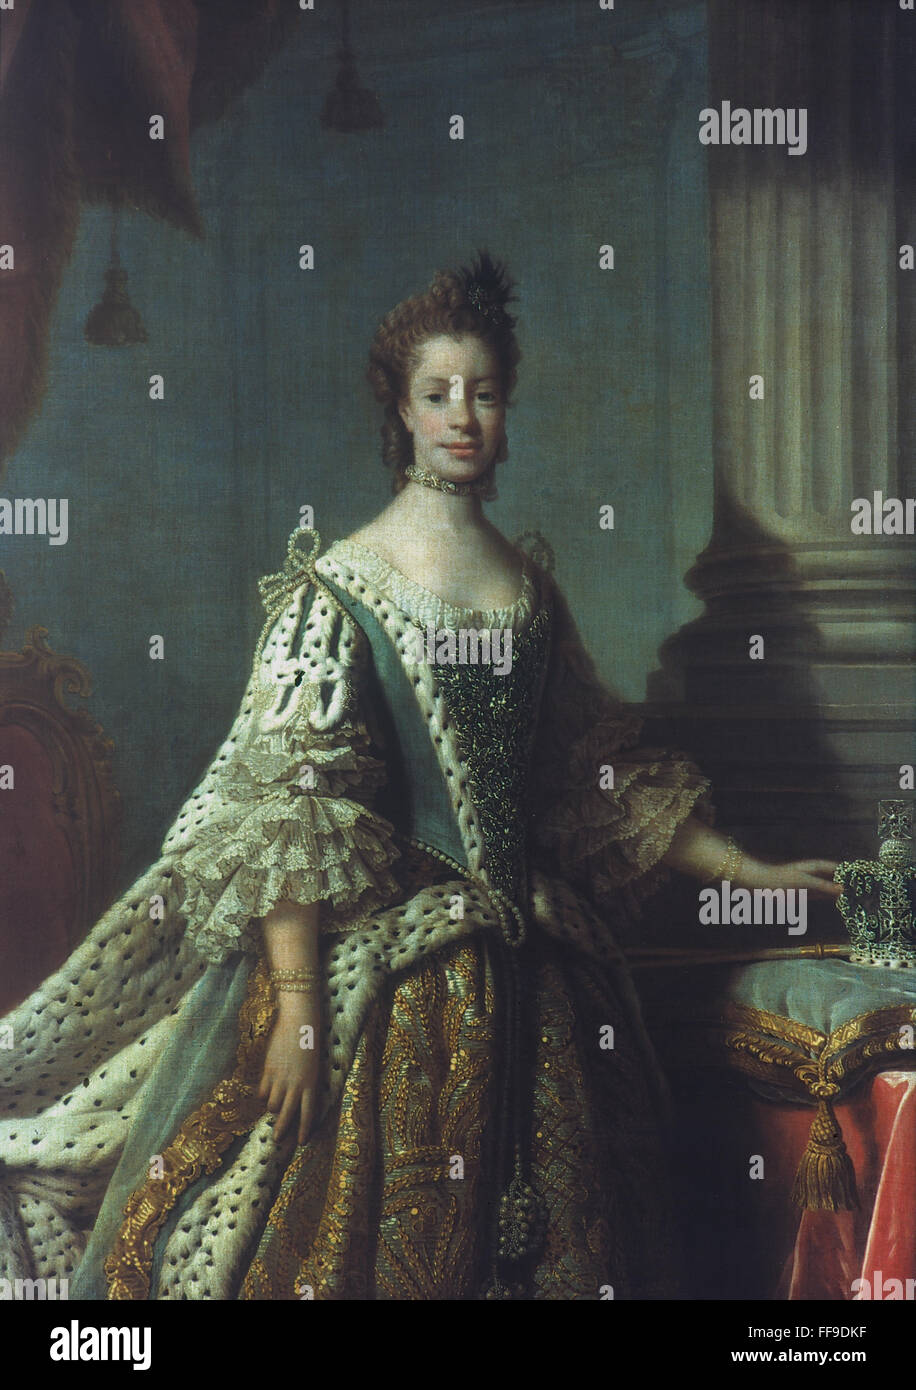 QUEEN CHARLOTTE (1744-1818). /NCharlotte Sophia de Mecklenburg-Strelitz. Reina consorte del Rey George III de Gran Bretaña. Óleo sobre lienzo, c1762, studio de Allan Ramsay. Foto de stock